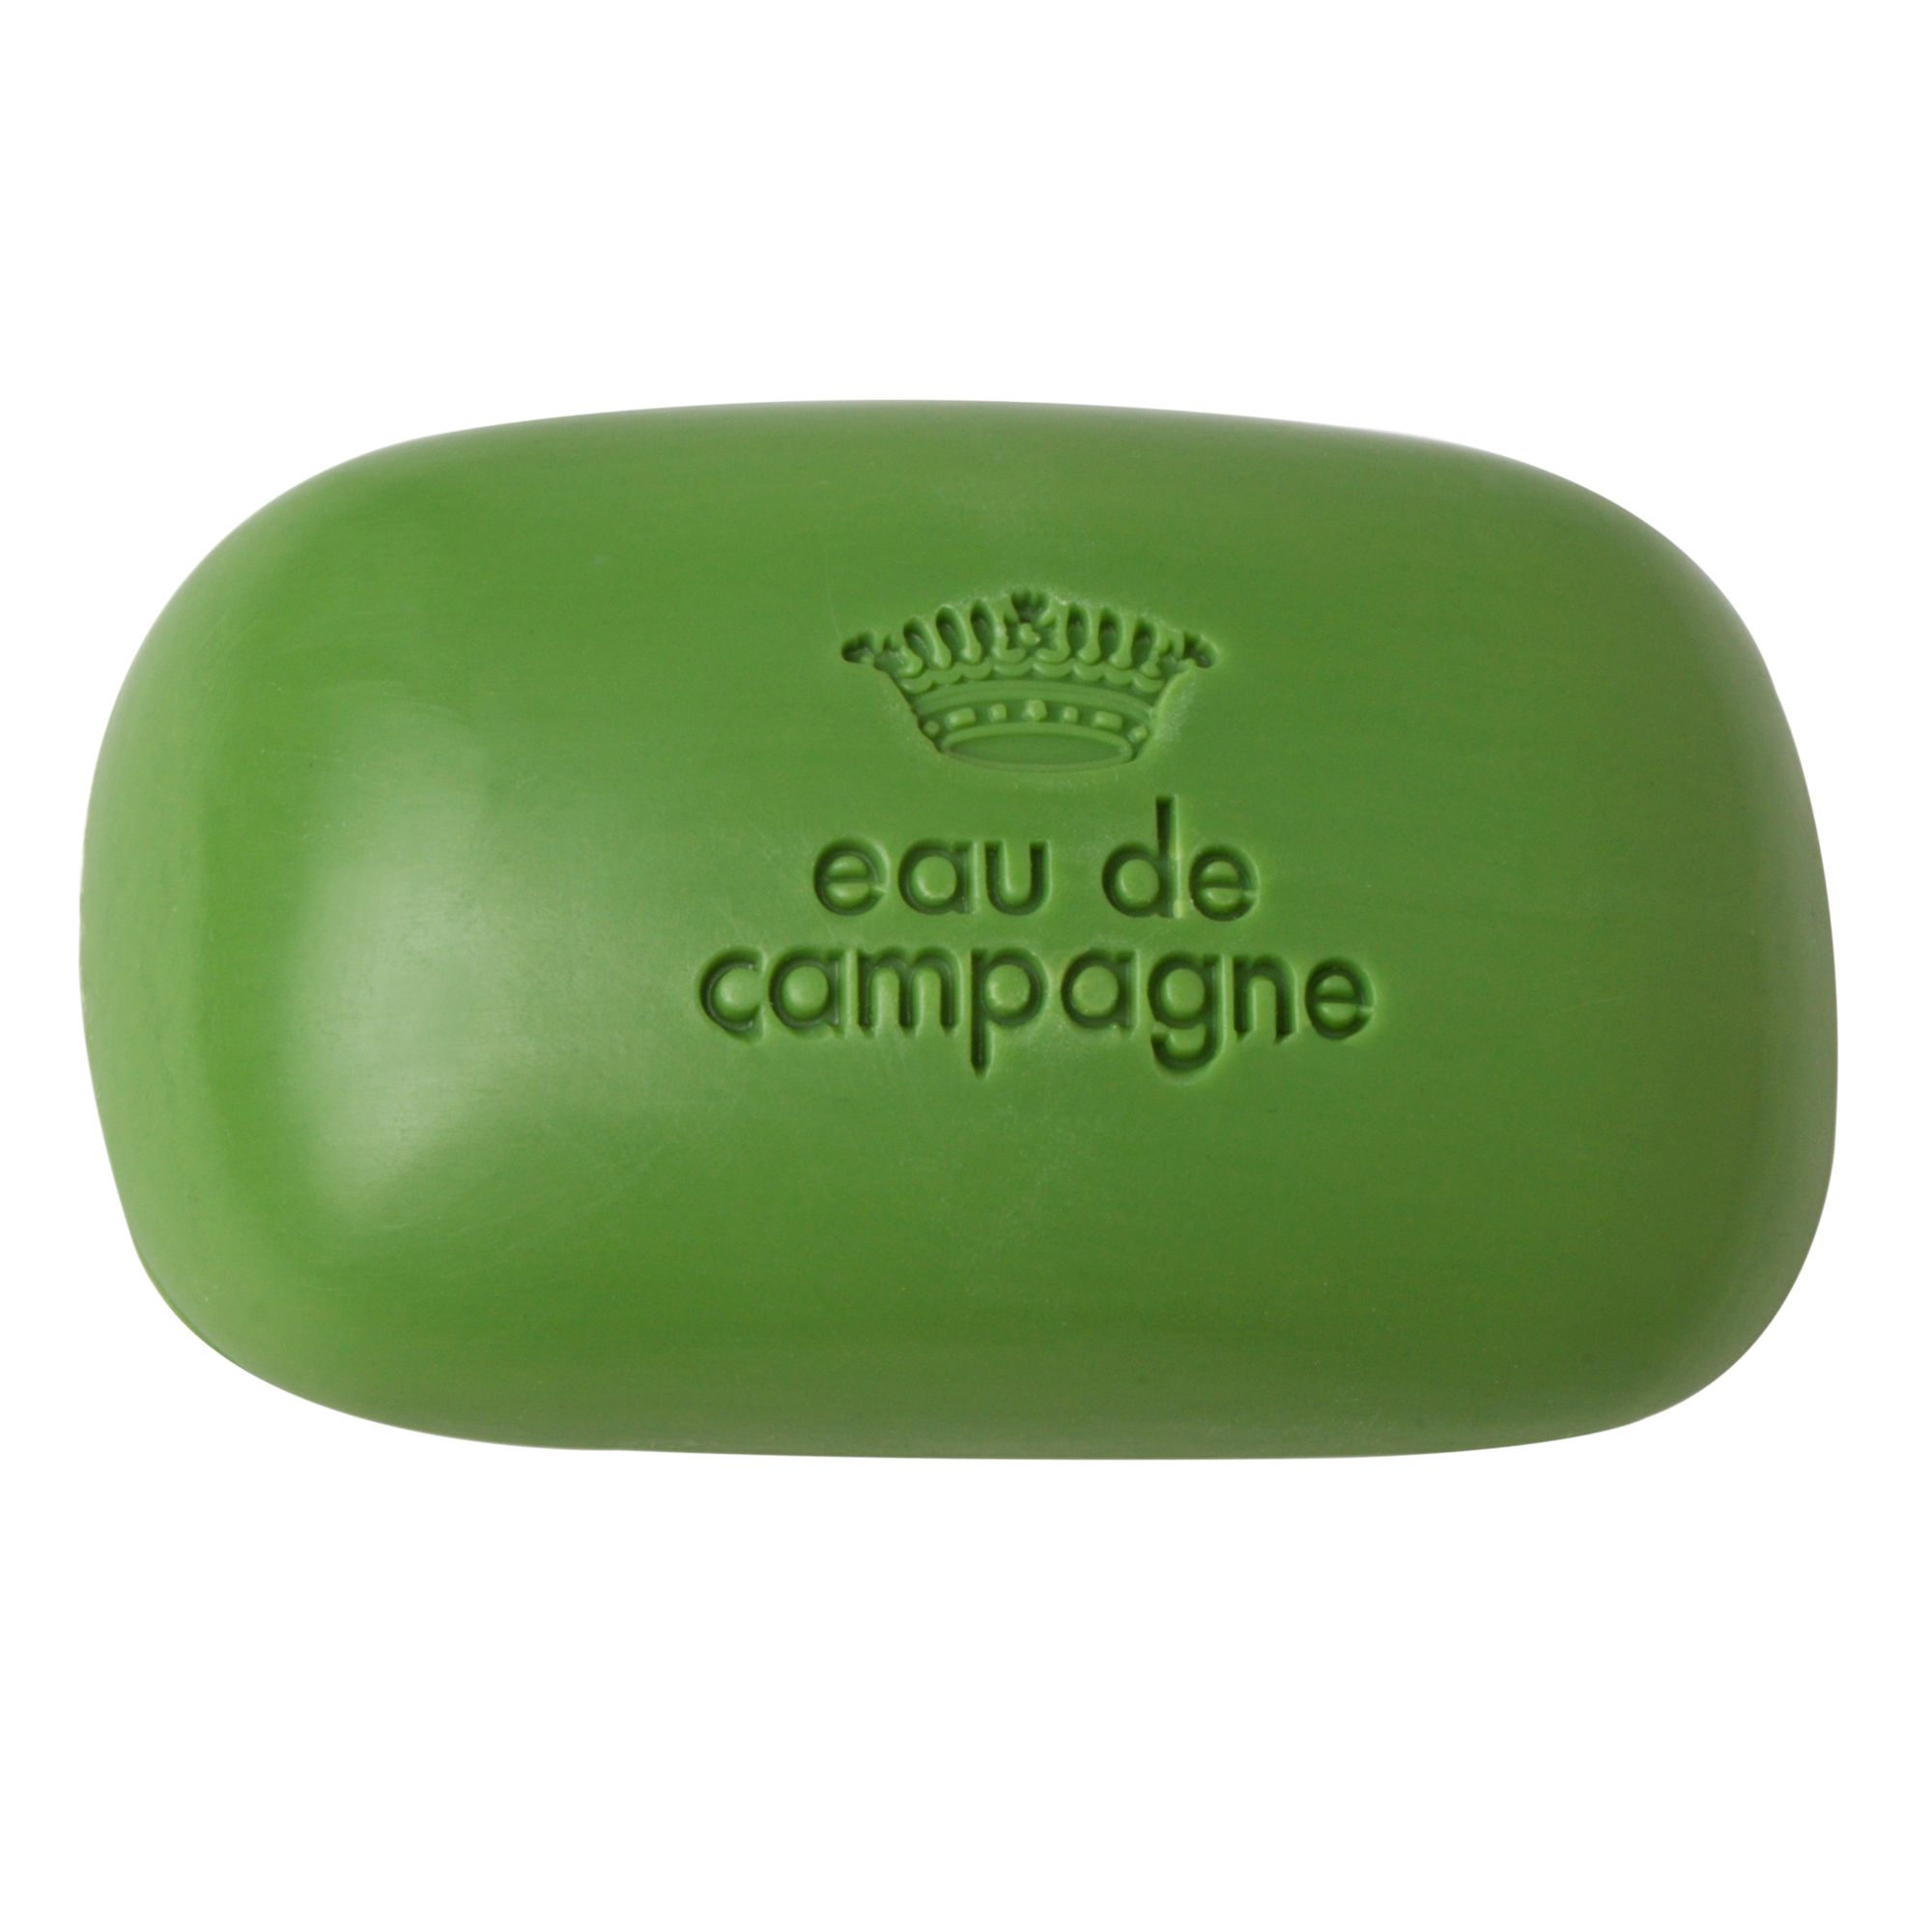 Sisley-Paris Eau de Campagne Soap, 100g 1